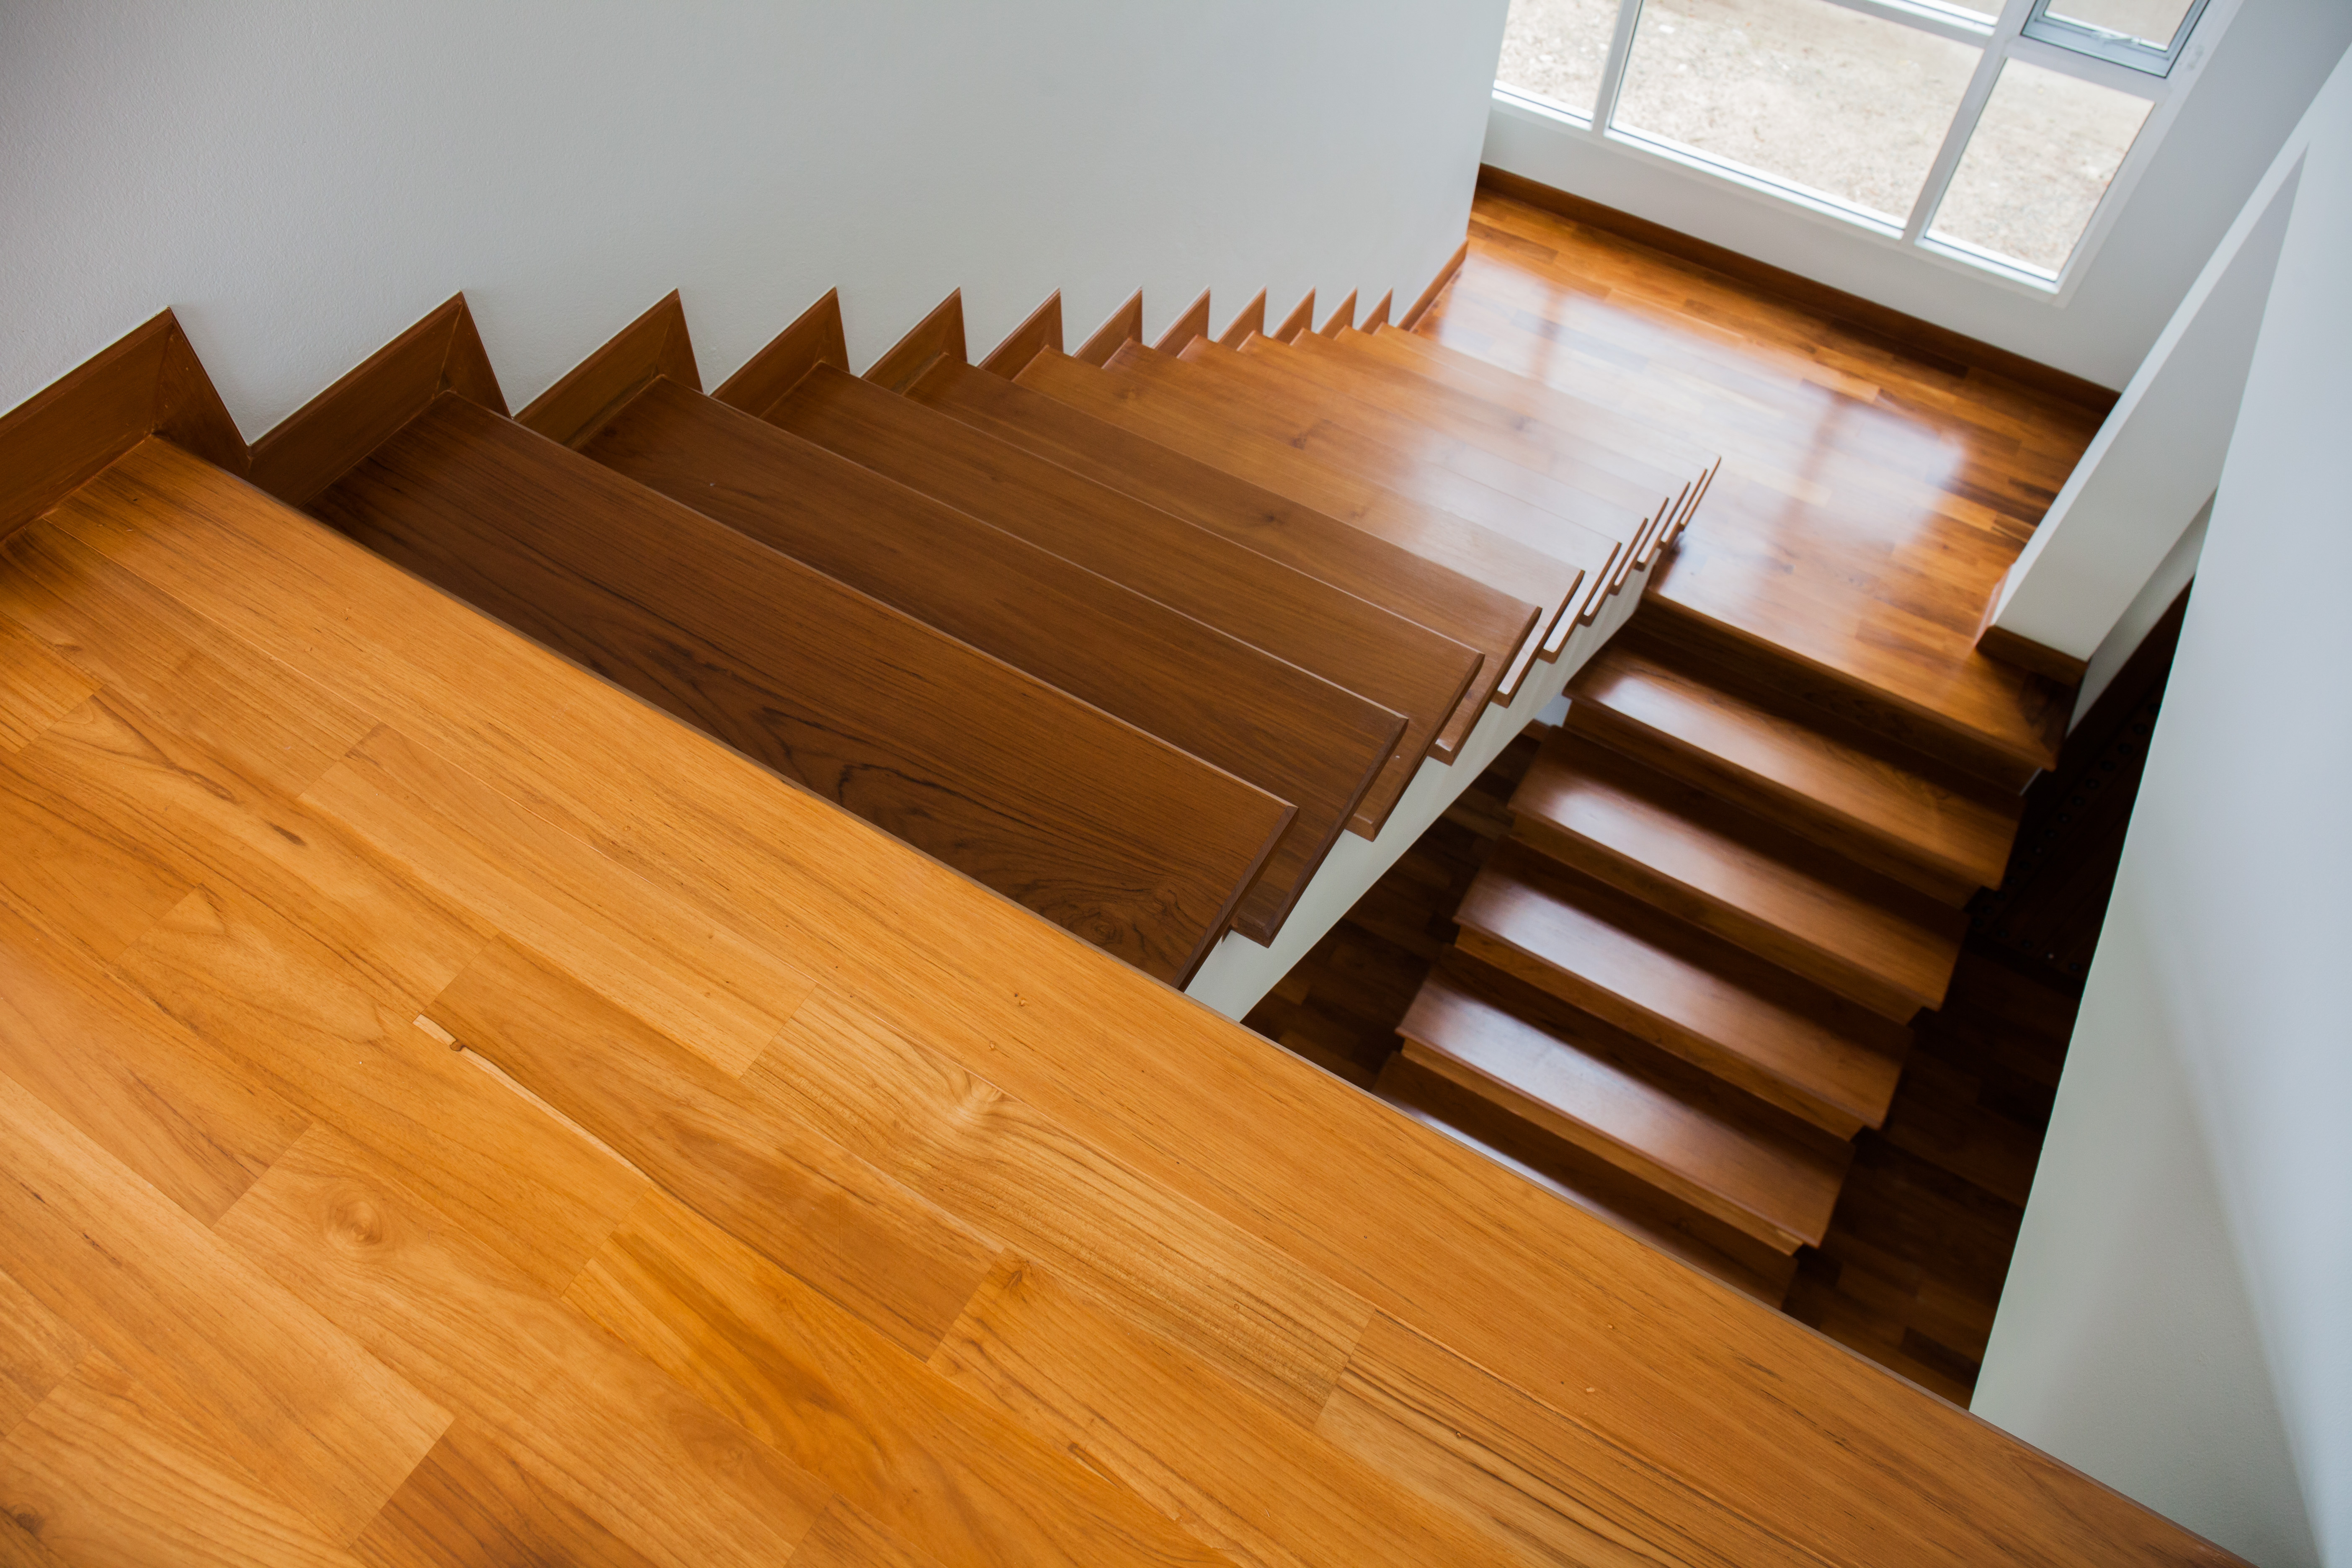 Gradini per scale interne. Il legno migliore per la vostra scala